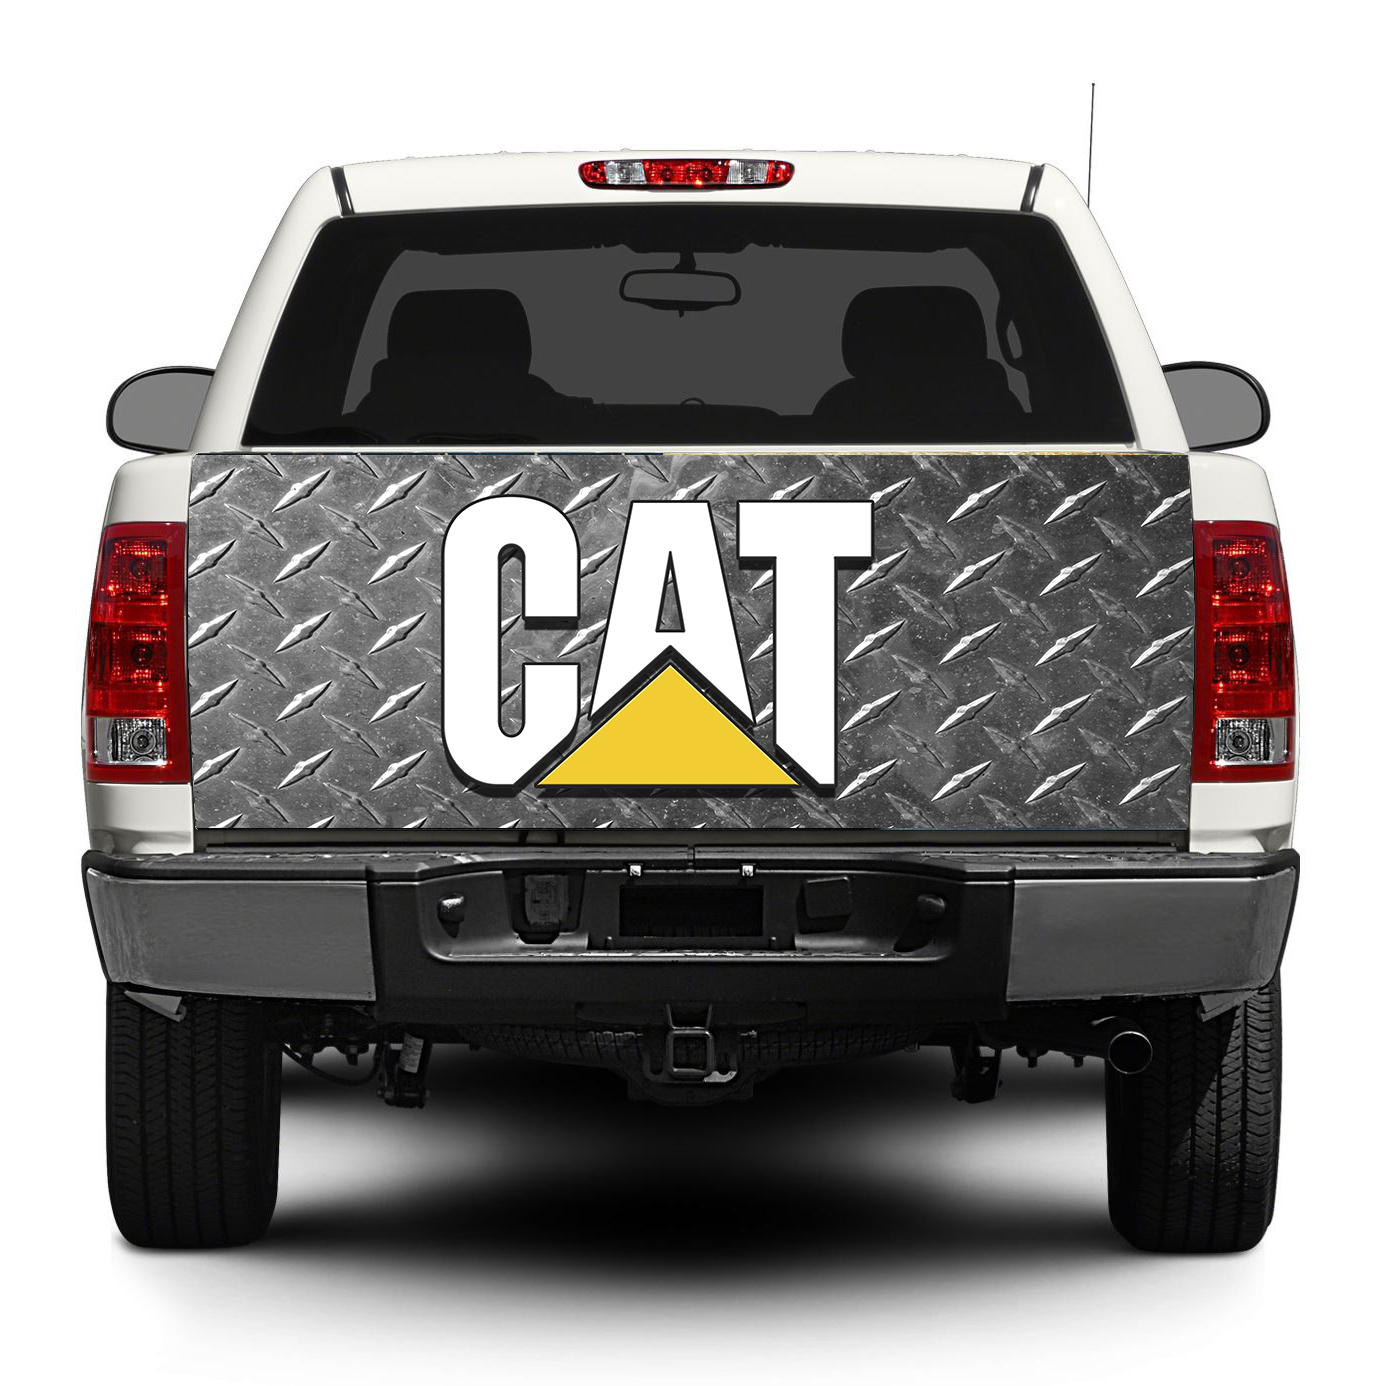 Cat Caterpillar logo in acciaio portellone posteriore adesivo autoadesivo wrap pick-up camion suv